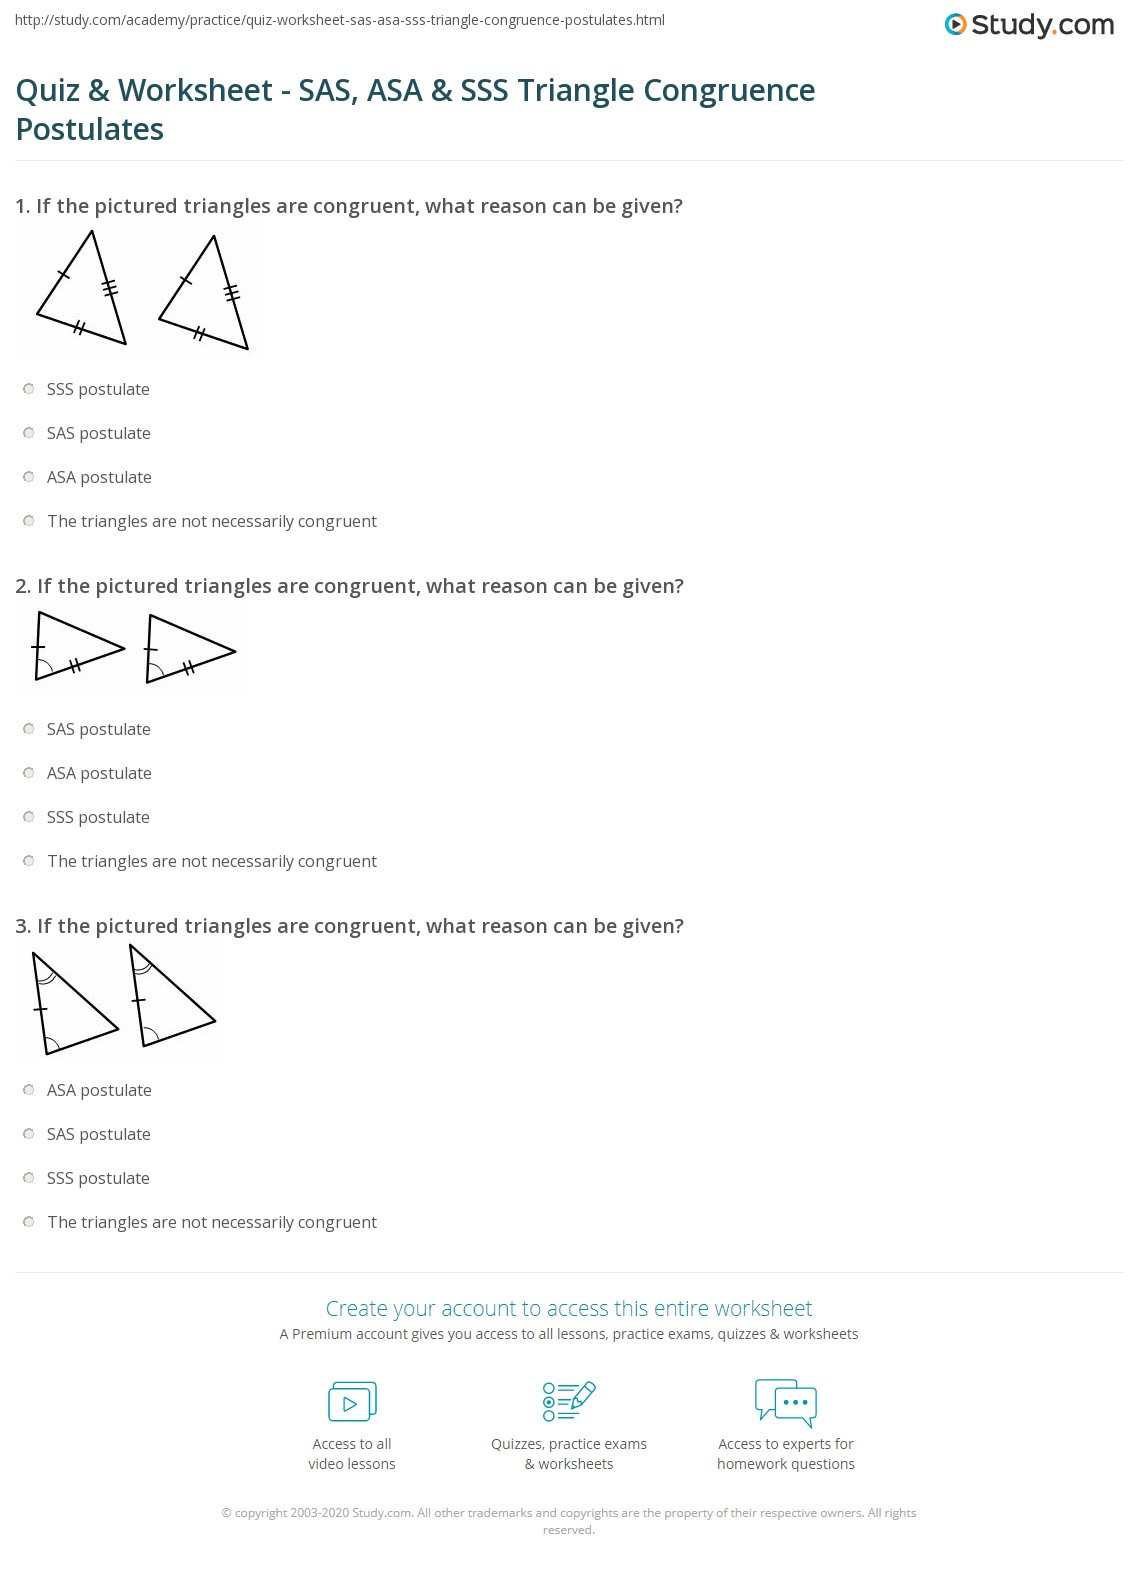 Triangle Congruence Practice Worksheet Quiz &amp; Worksheet Sas asa &amp; Sss Triangle Congruence